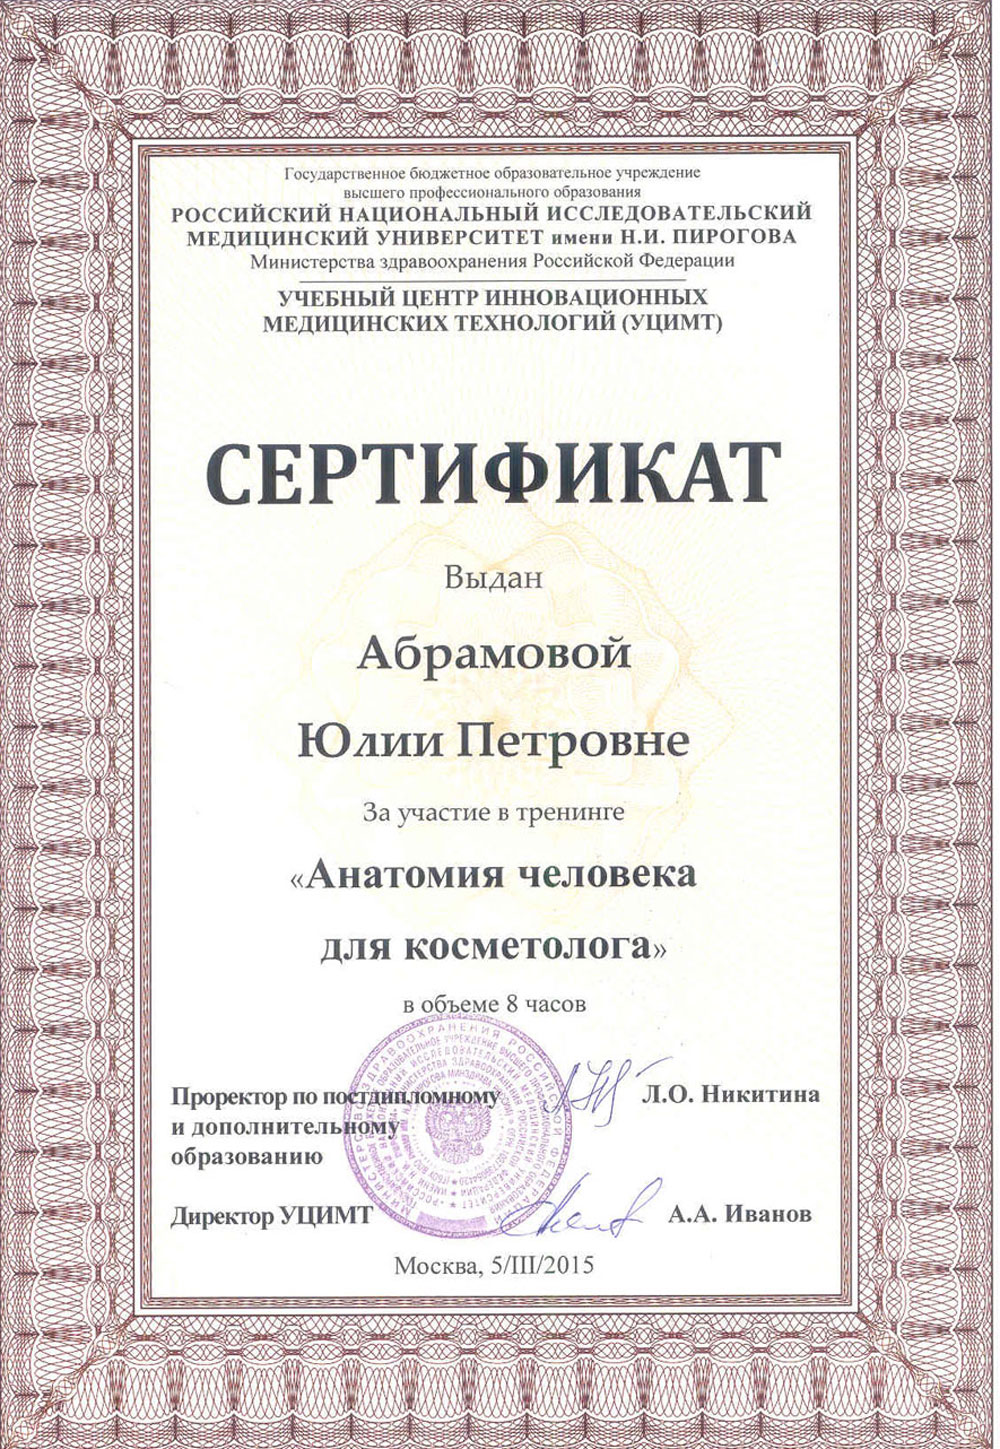 Сертификаты и дипломы «Лазермед» (Фото №127)